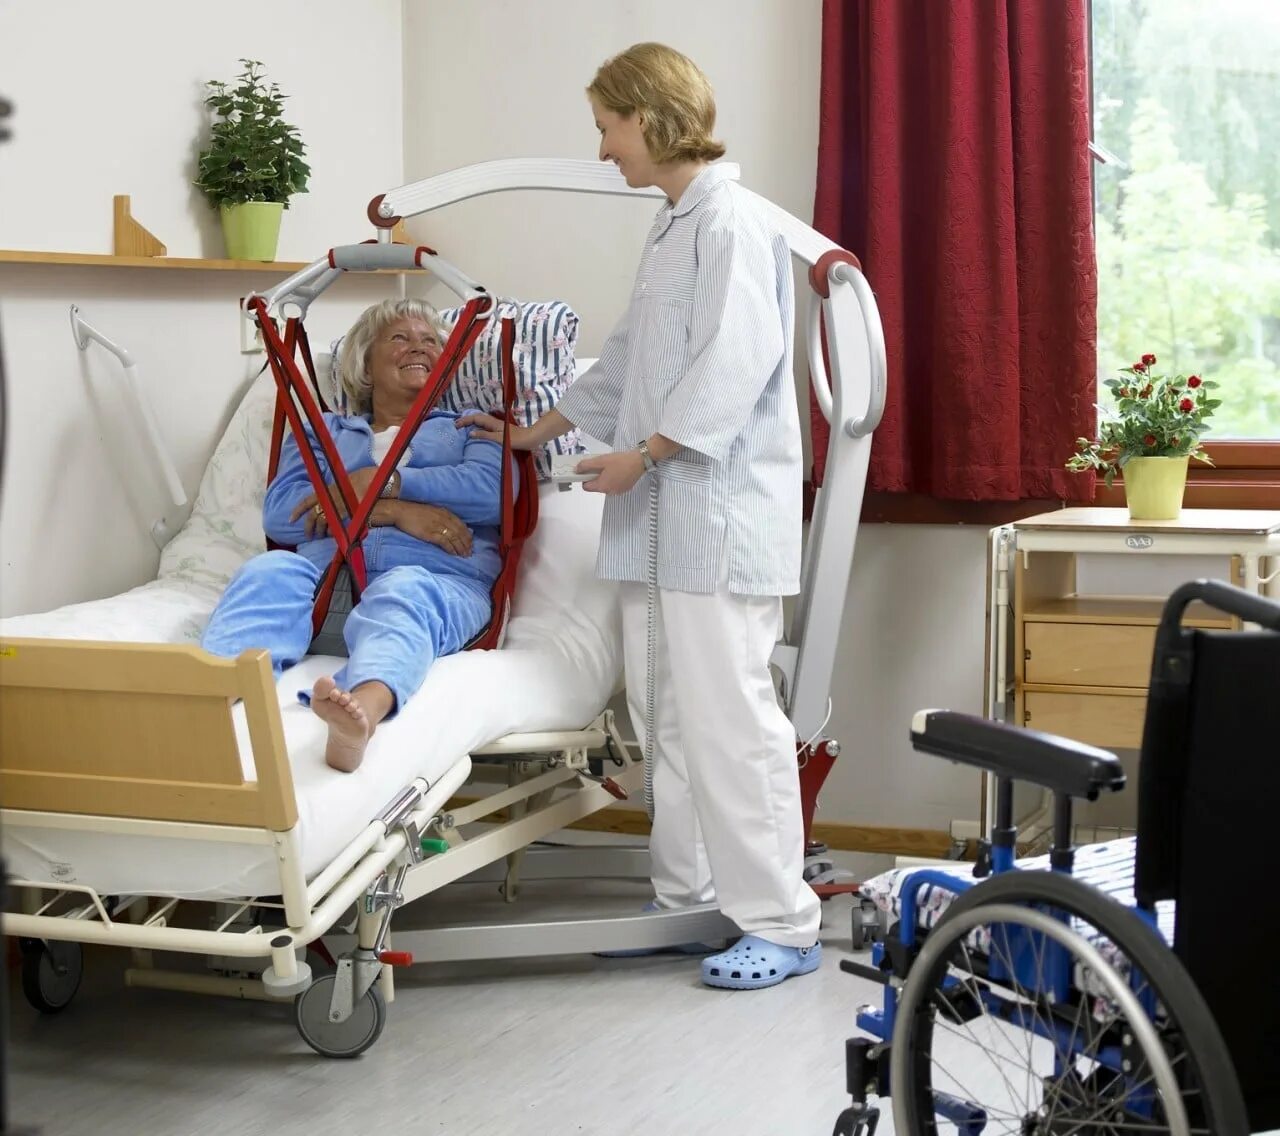 Перемещение лежачих больных. Оборудование для перемещения тяжелобольного пациента. Коляска для лежачих больных. Уход за пациентом.